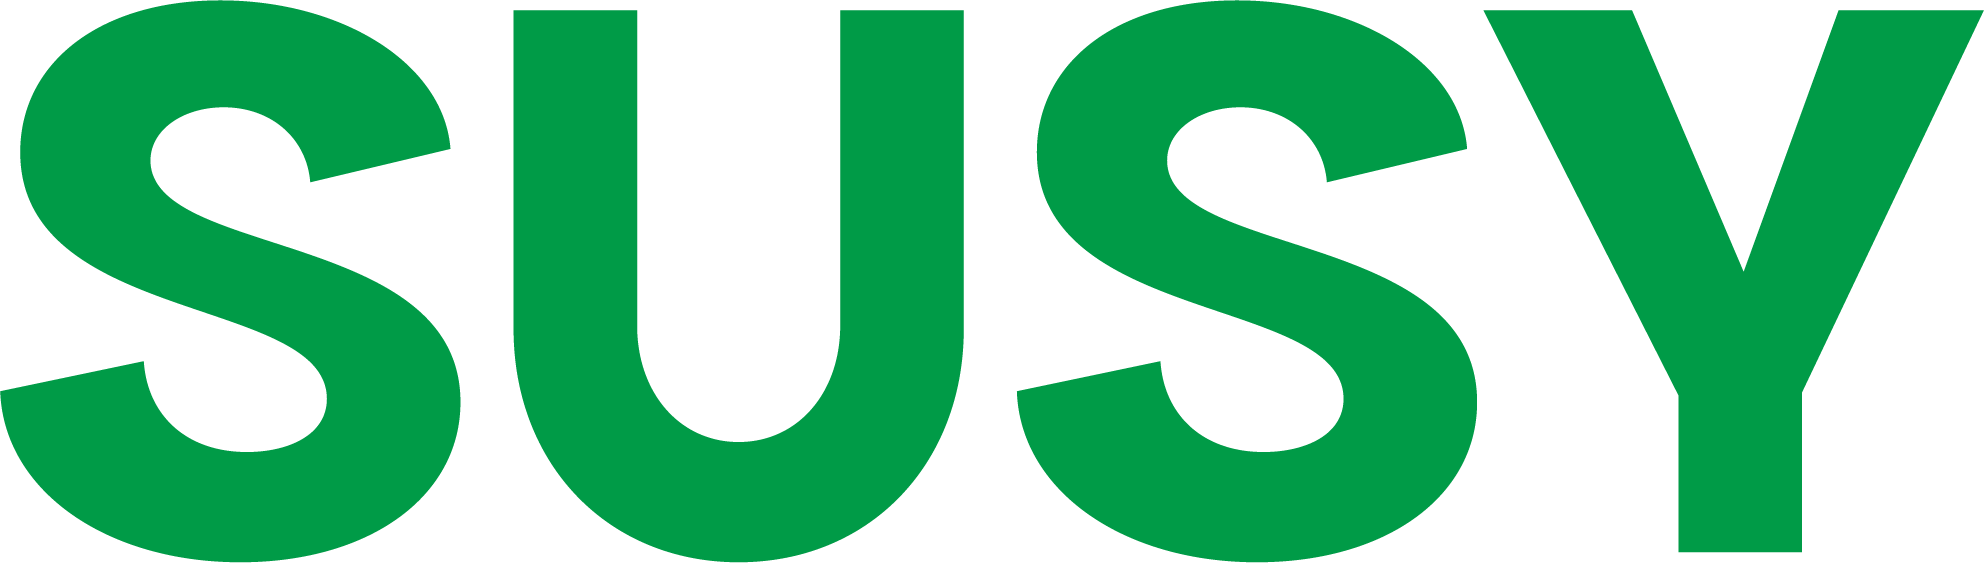 SUSY logo (1)